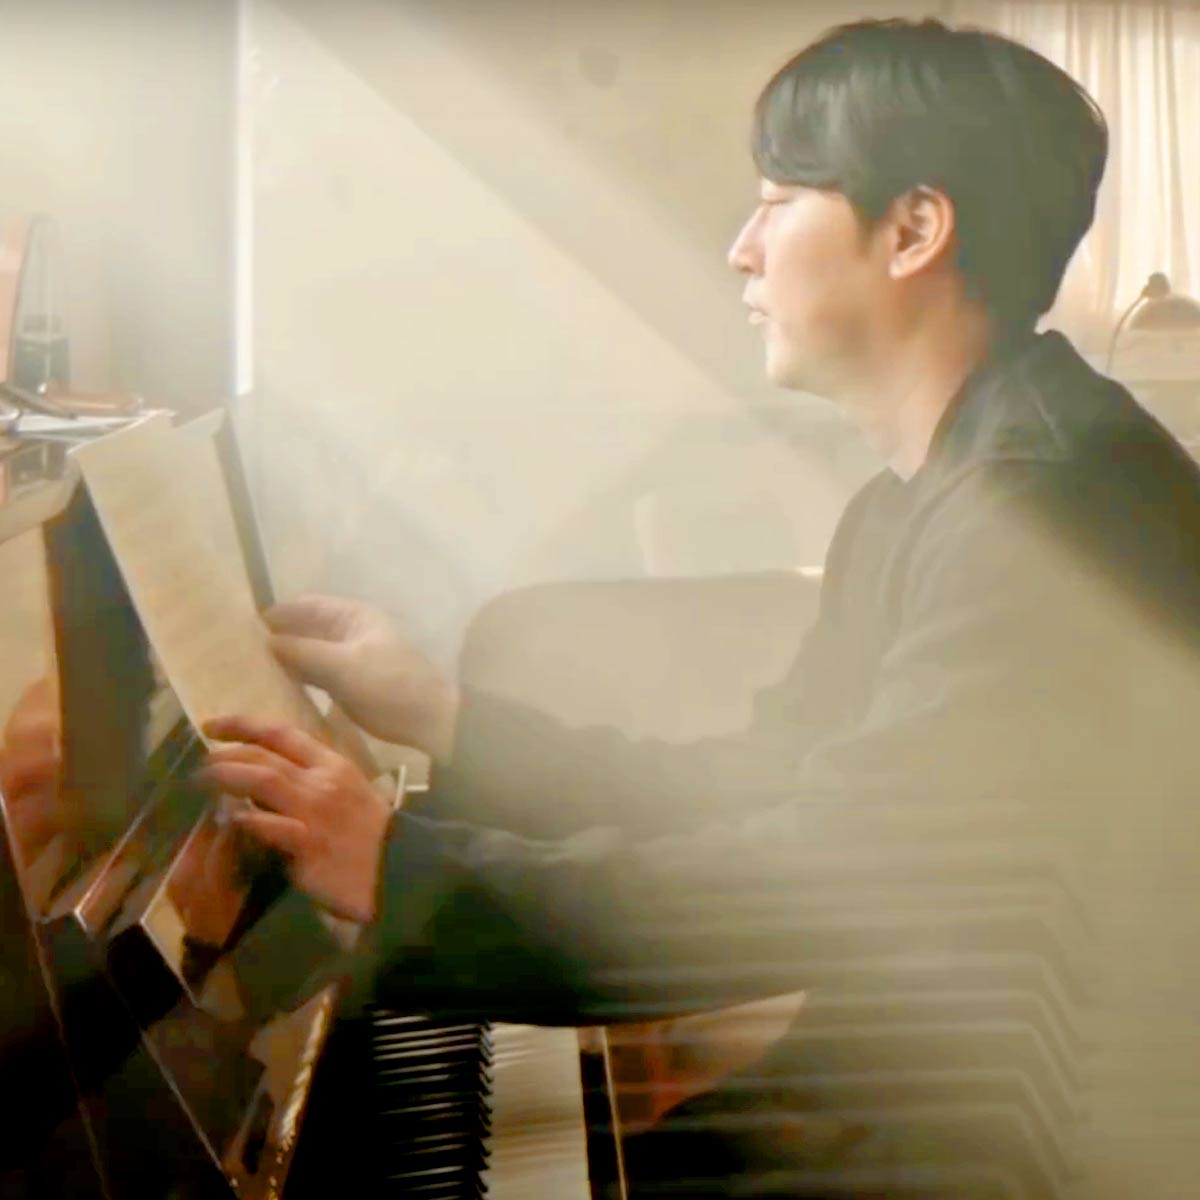 Play May Be By Yiruma Piano Music Sheet On Virtual Piano - roblox piano japanese songs